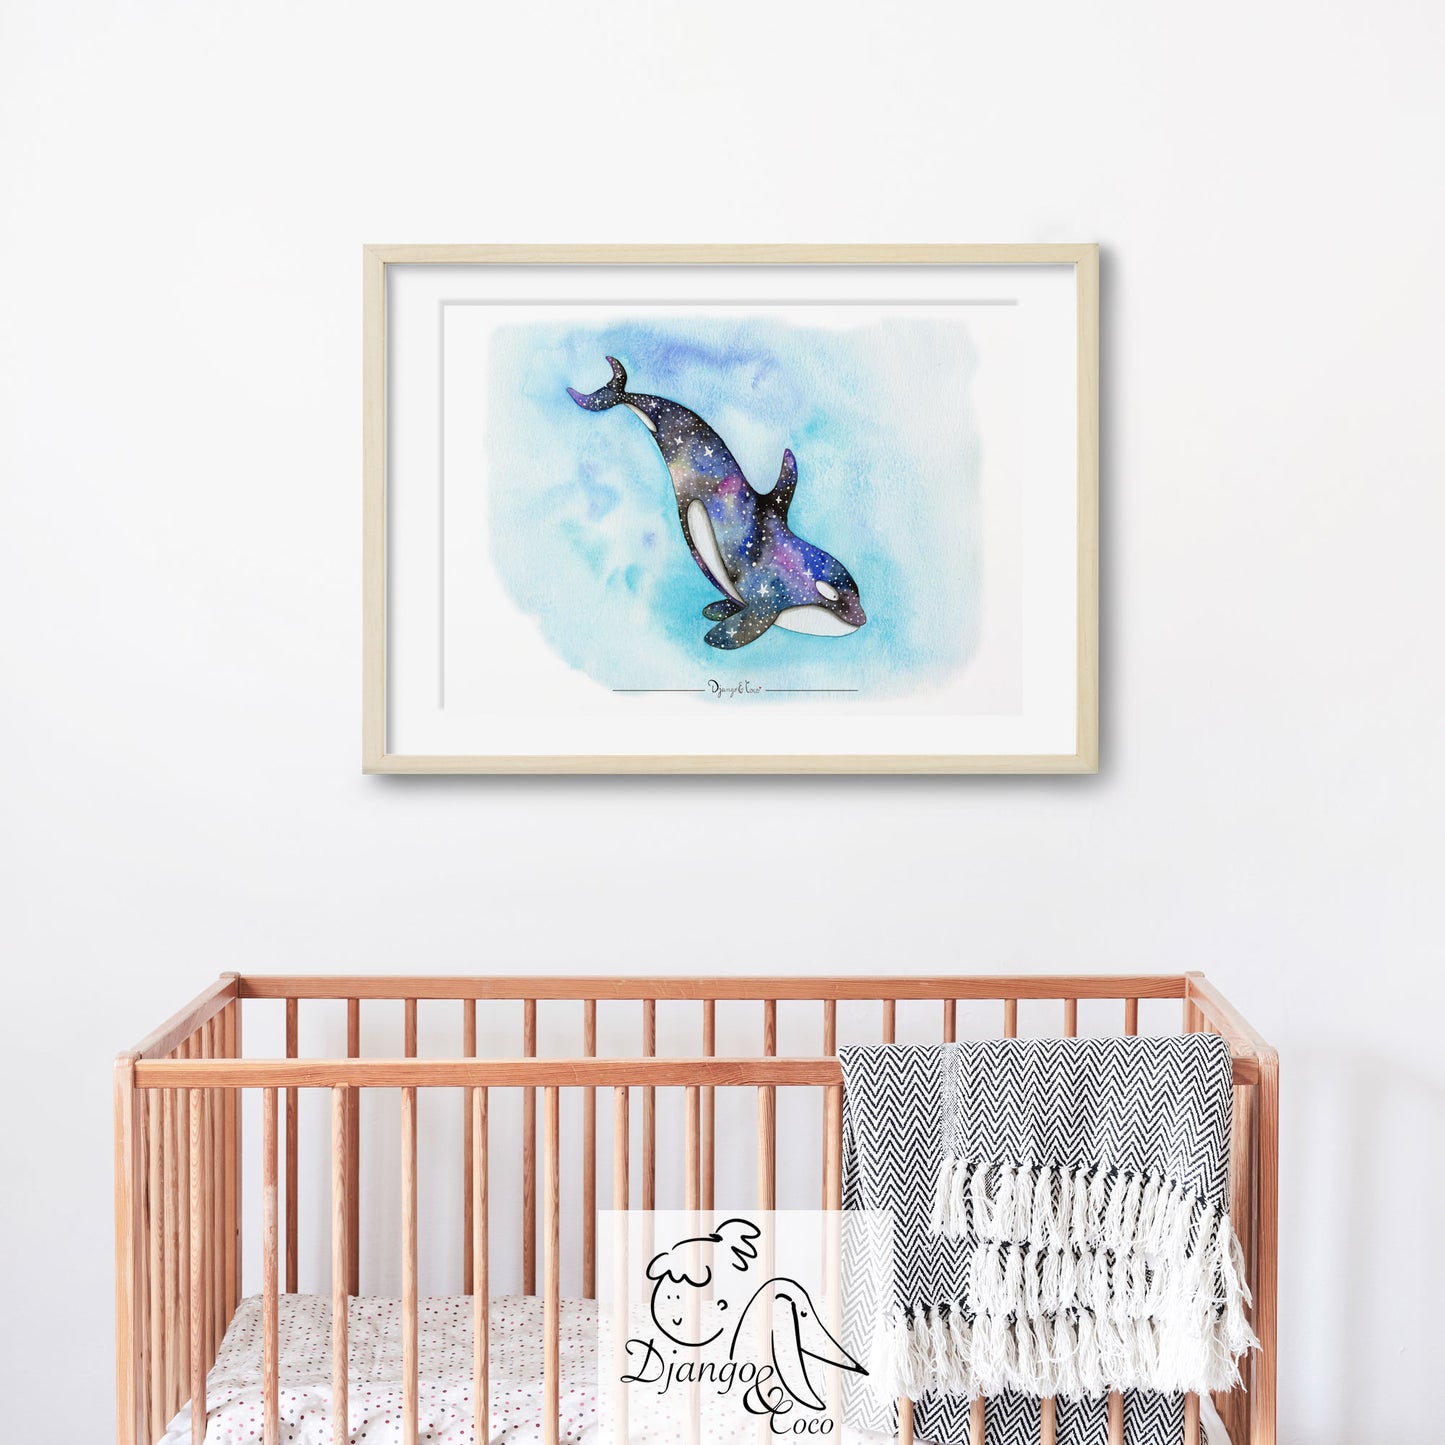 framed art of a galaxy orca in a nursery